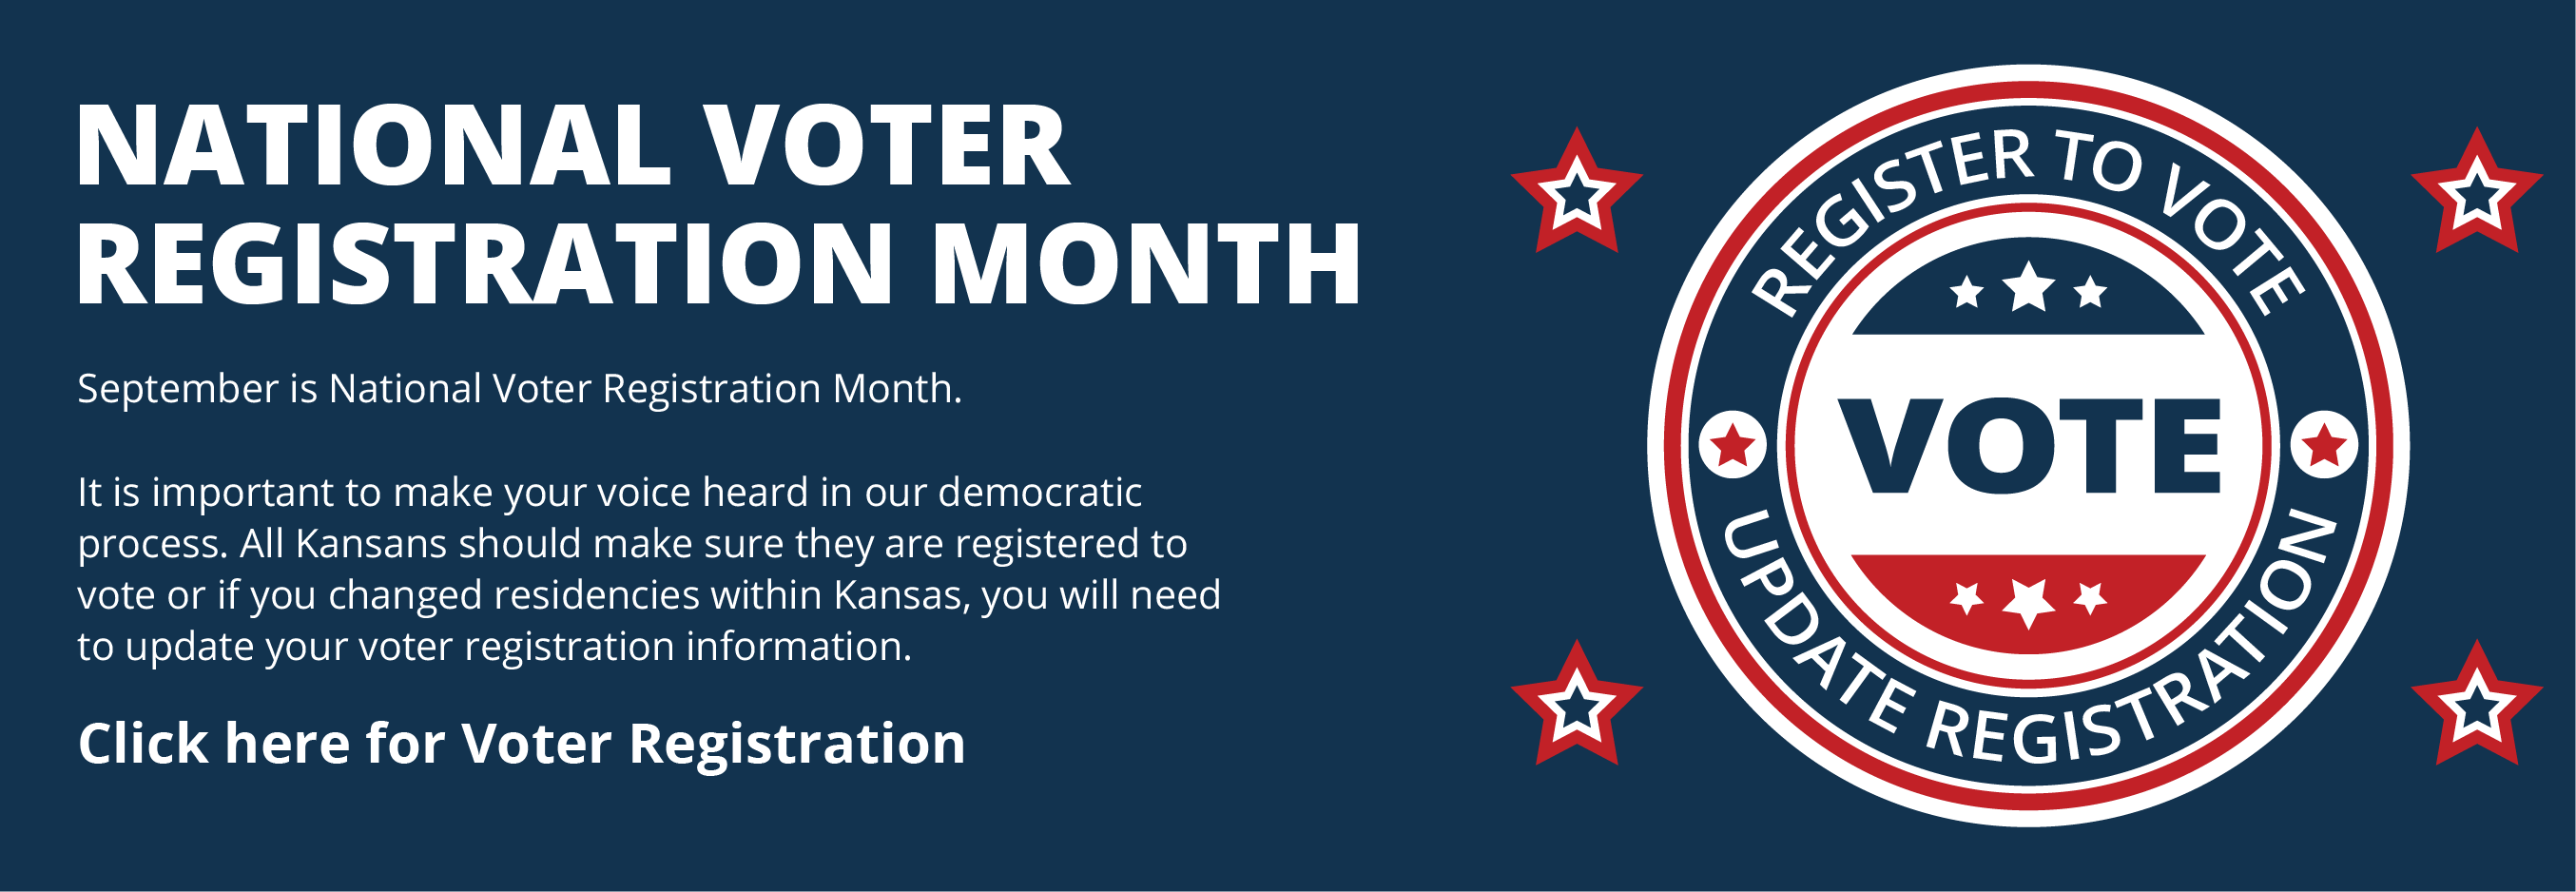 Voter Registration Month image